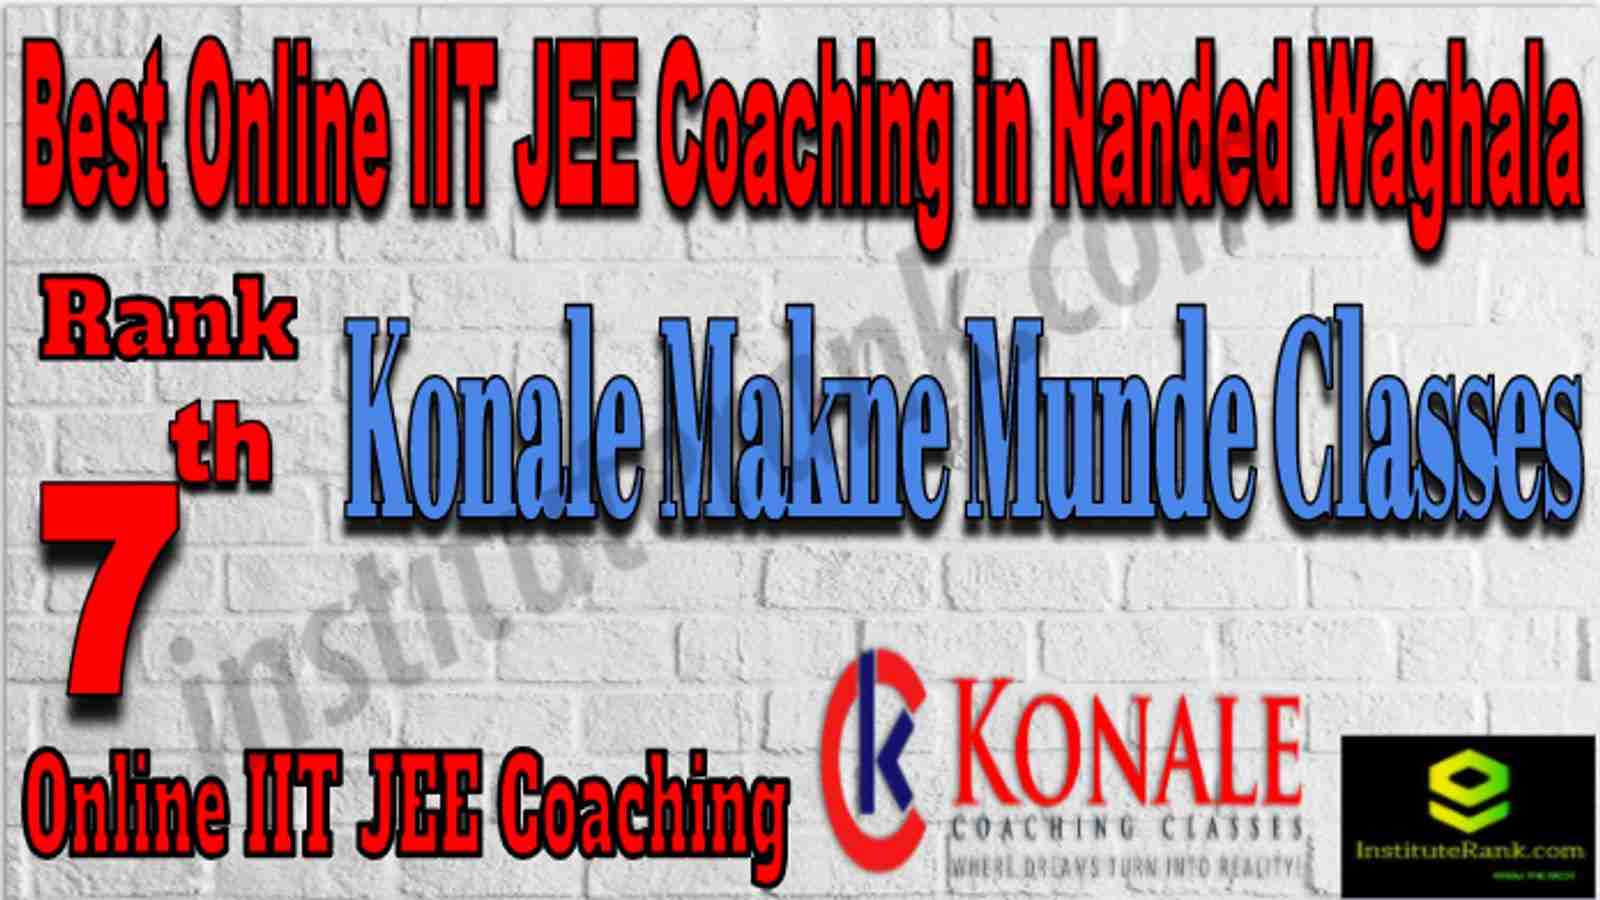 Rank 7 Best Online IIT JEE Coaching in Nanded Waghala